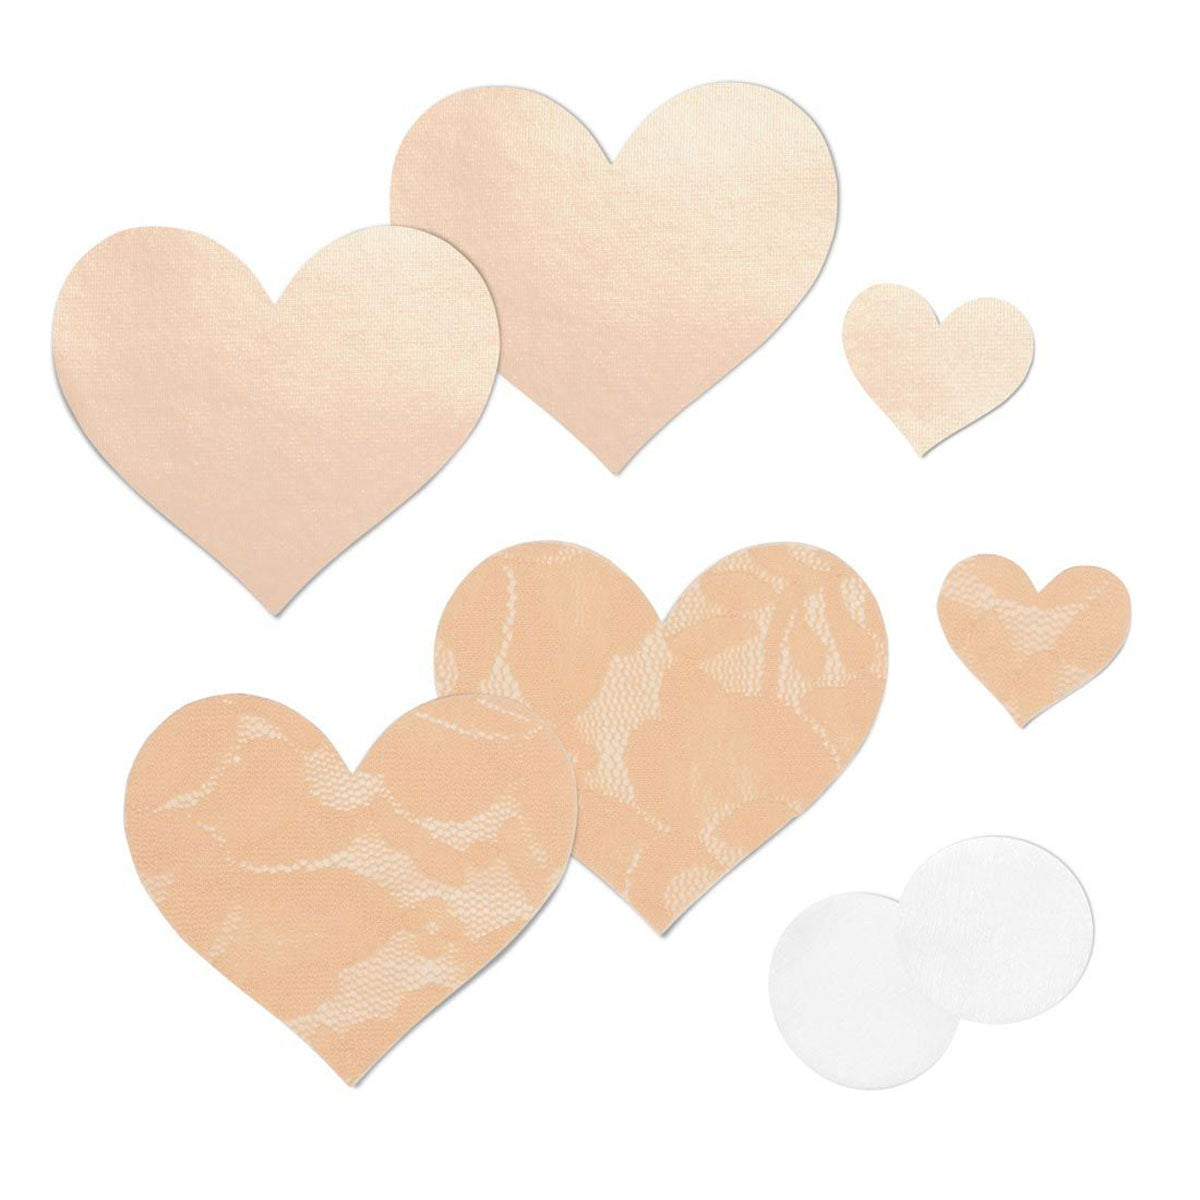 Nippies Basics - Crème Hearts